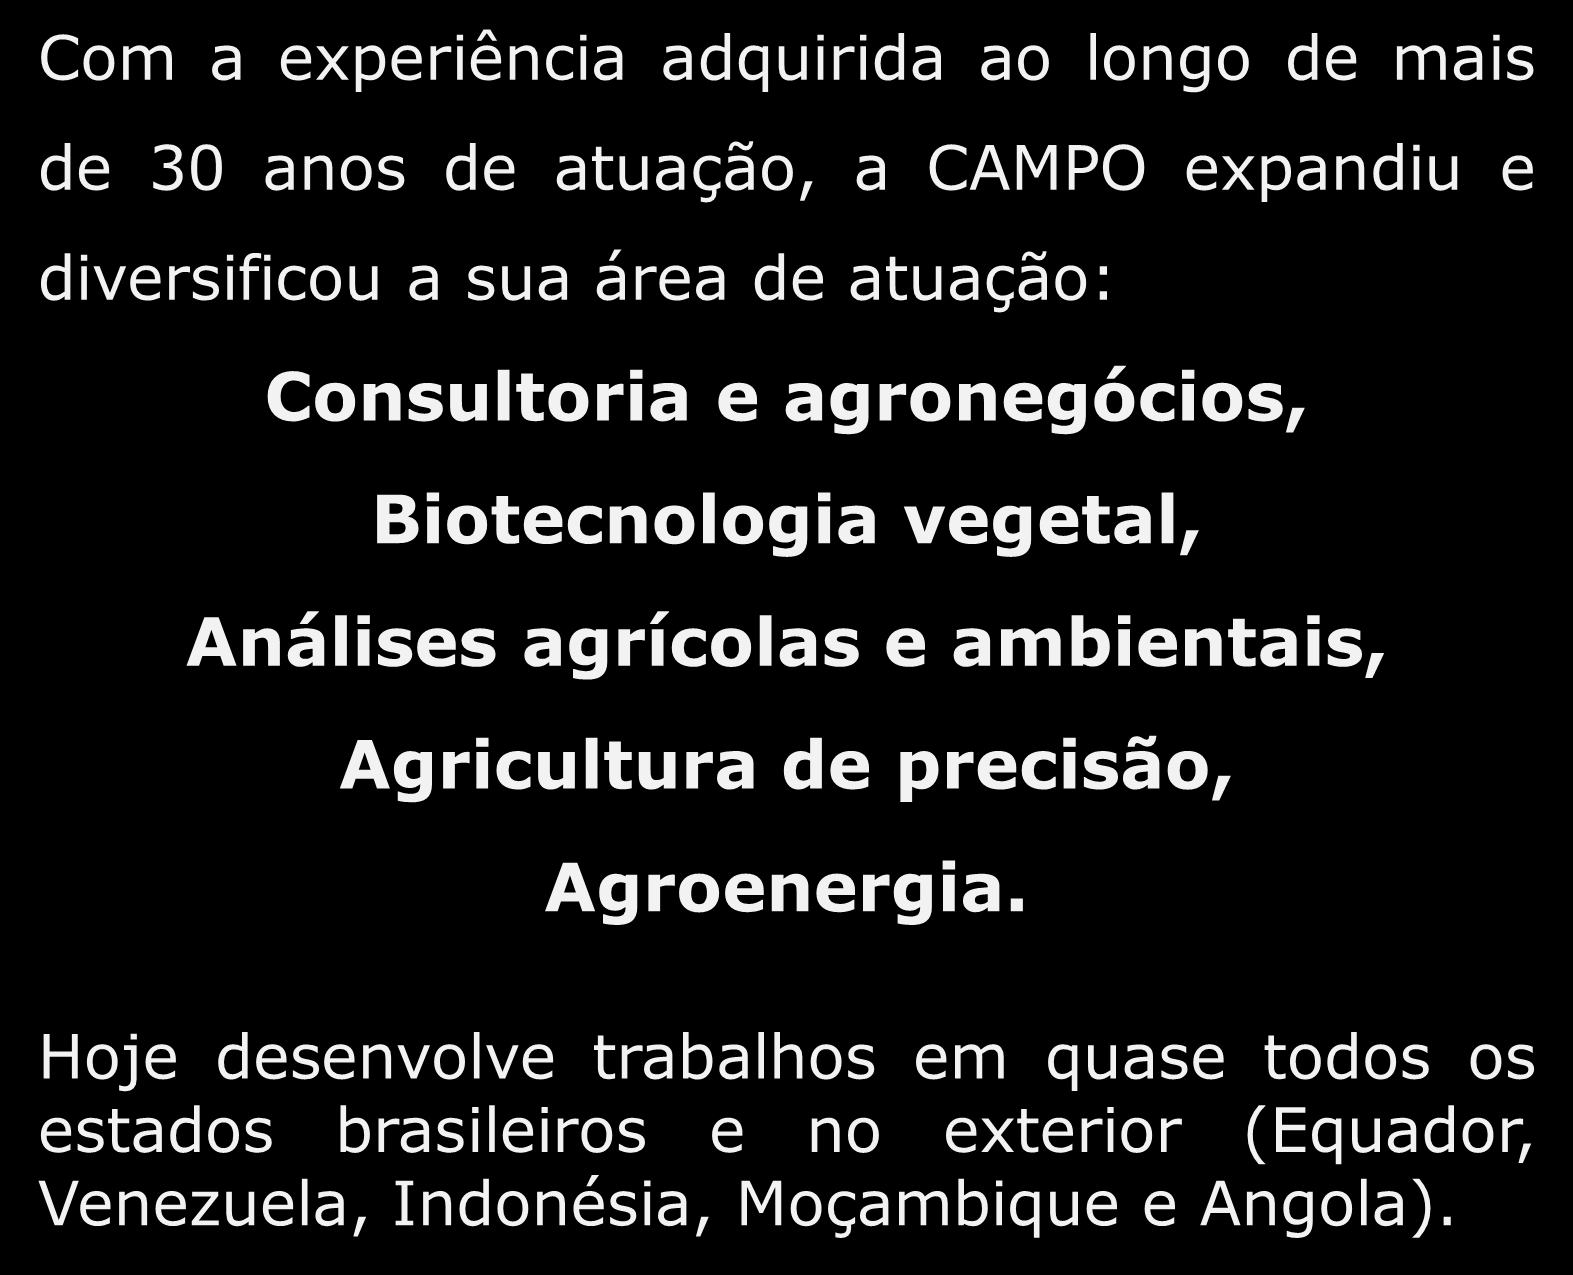 agrícolas e ambientais, Agricultura de precisão, Agroenergia.